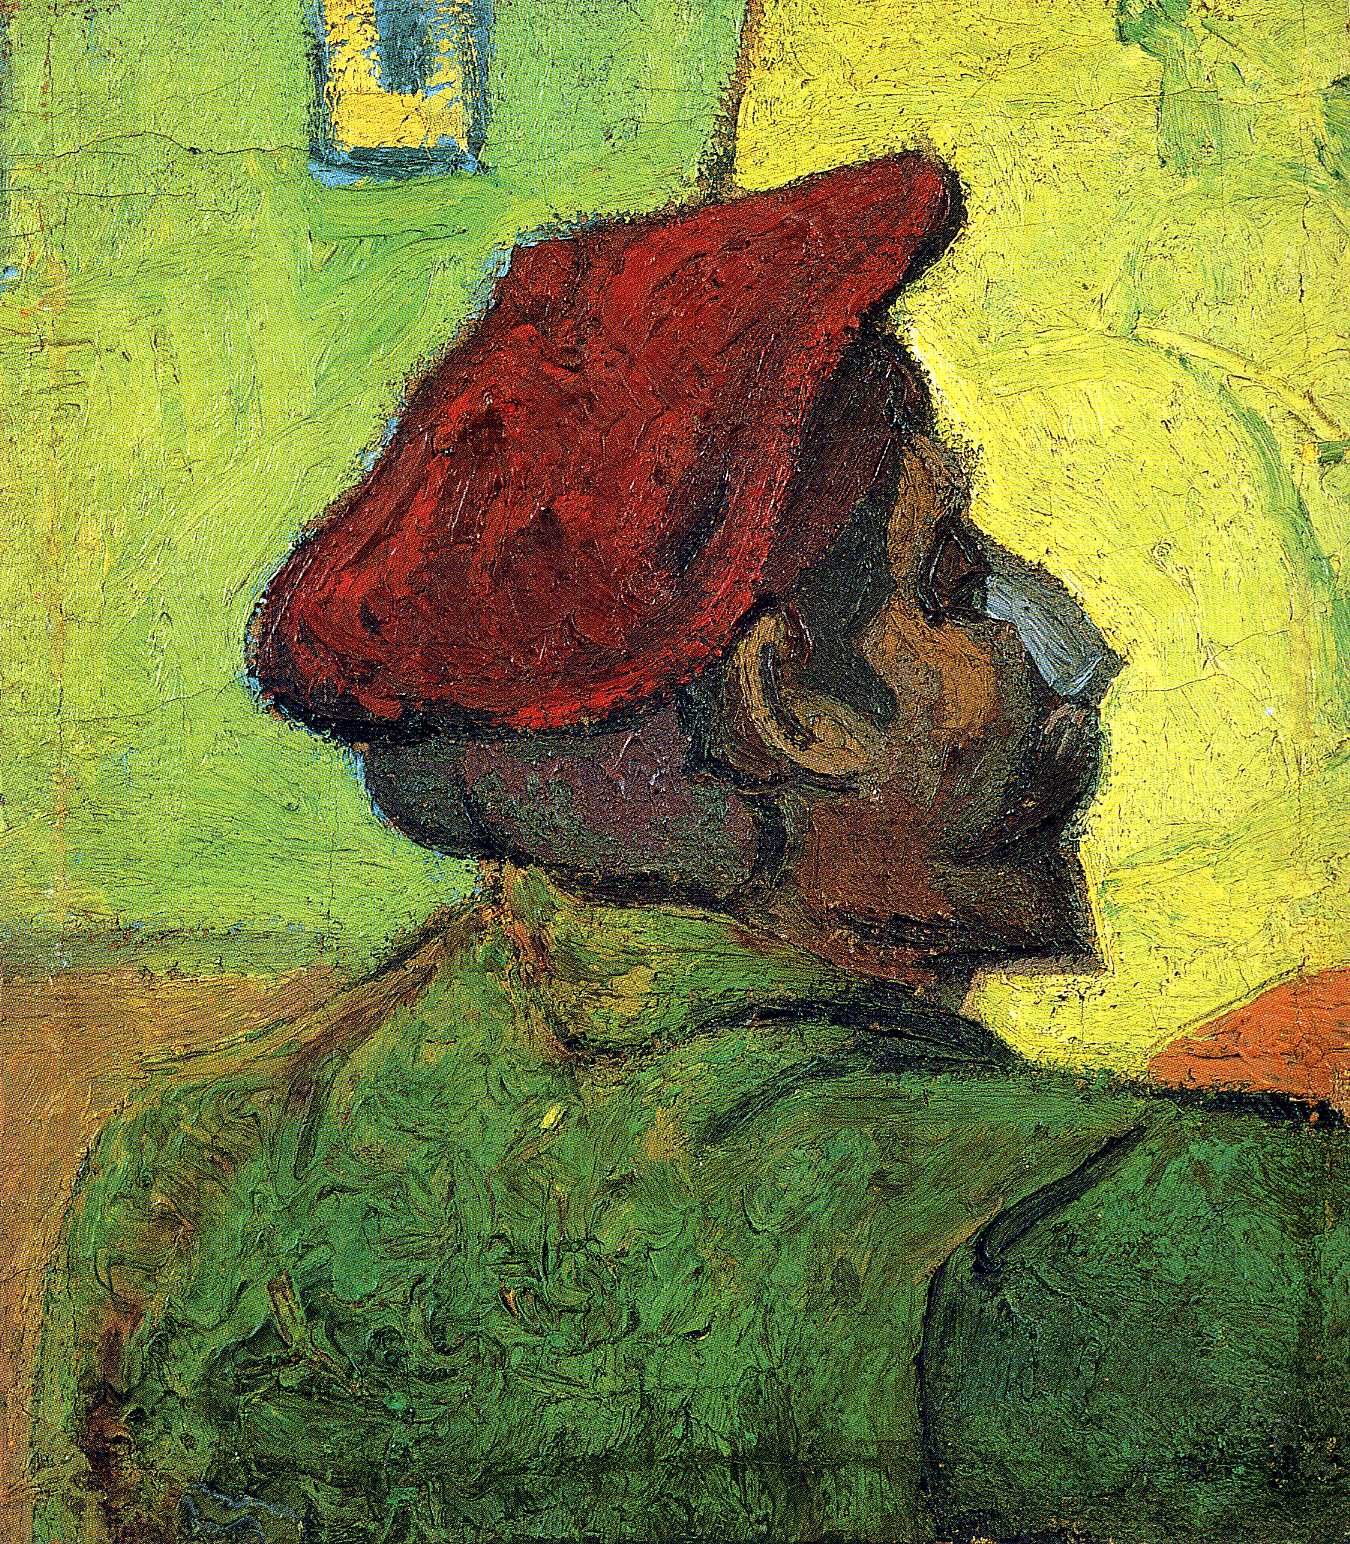 بول غوغان (رجل في قبعة حمراء) - Paul Gauguin (Man in a Red Beret) - مقهى جرير الثقافي